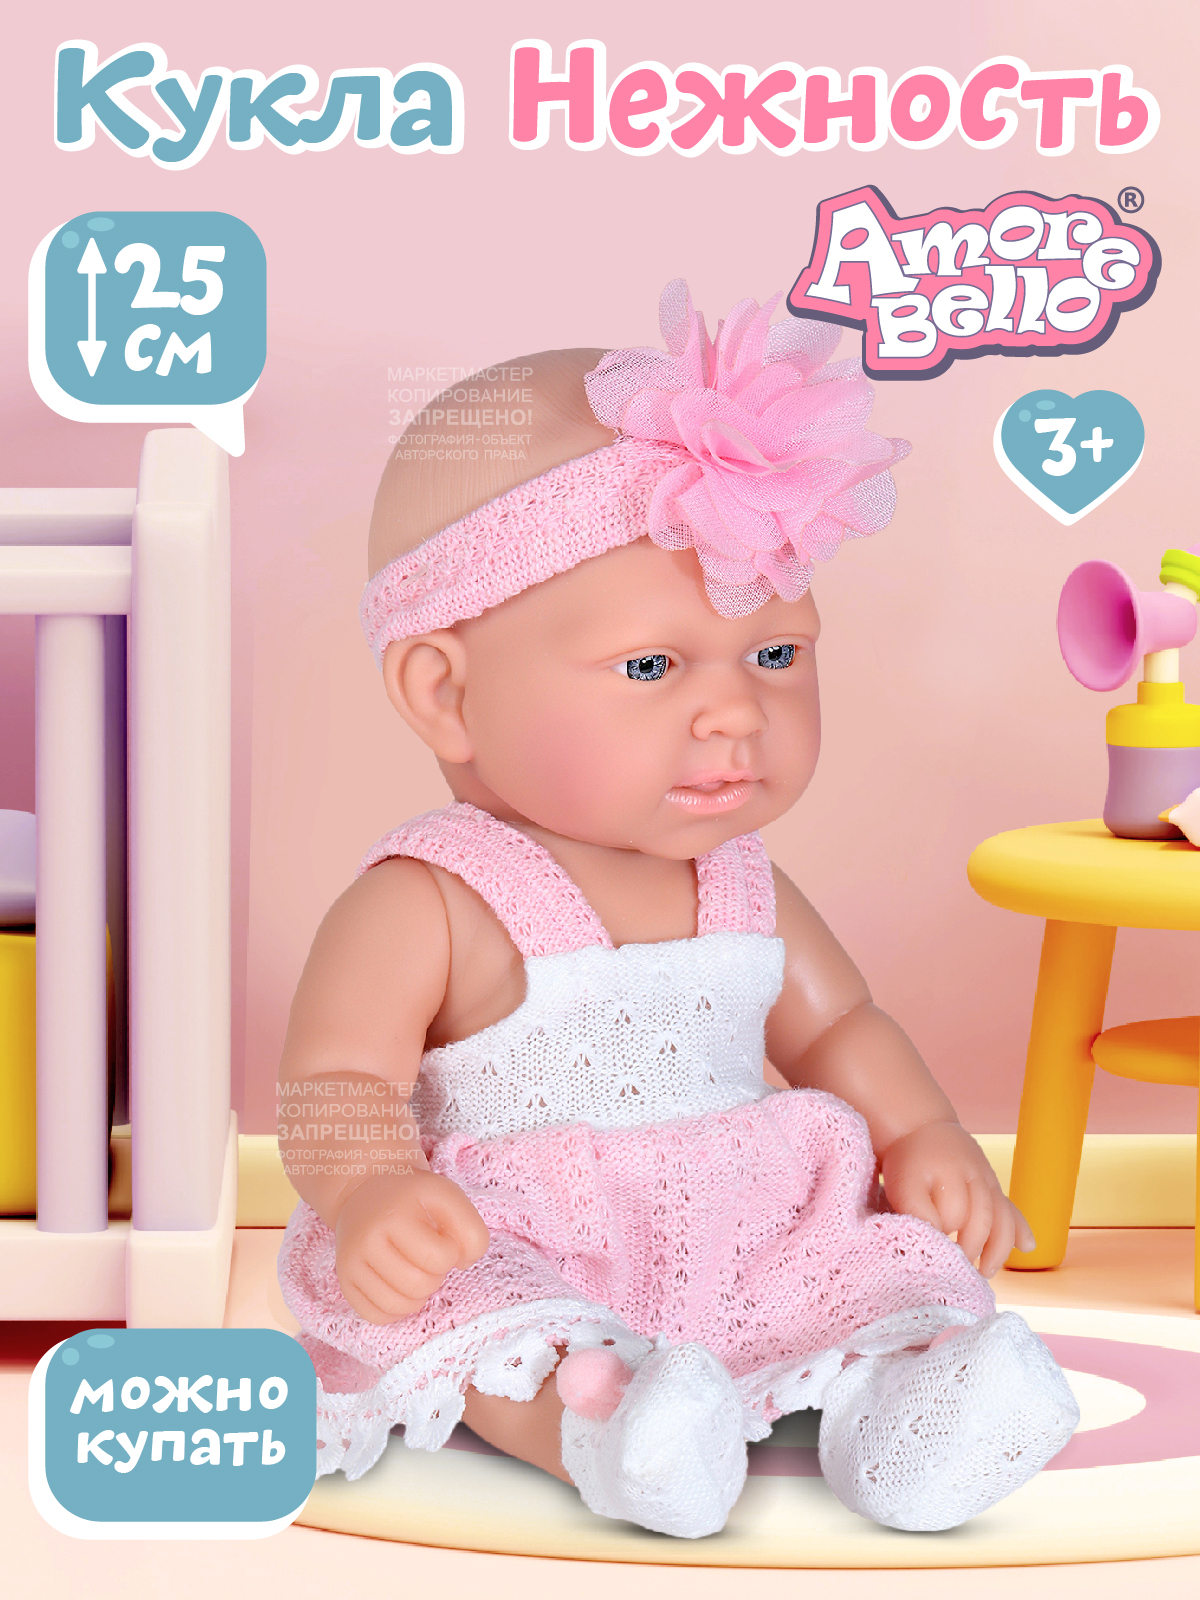 Пупс  Amore Bello серия Нежность Кукла 25 см JB0208869